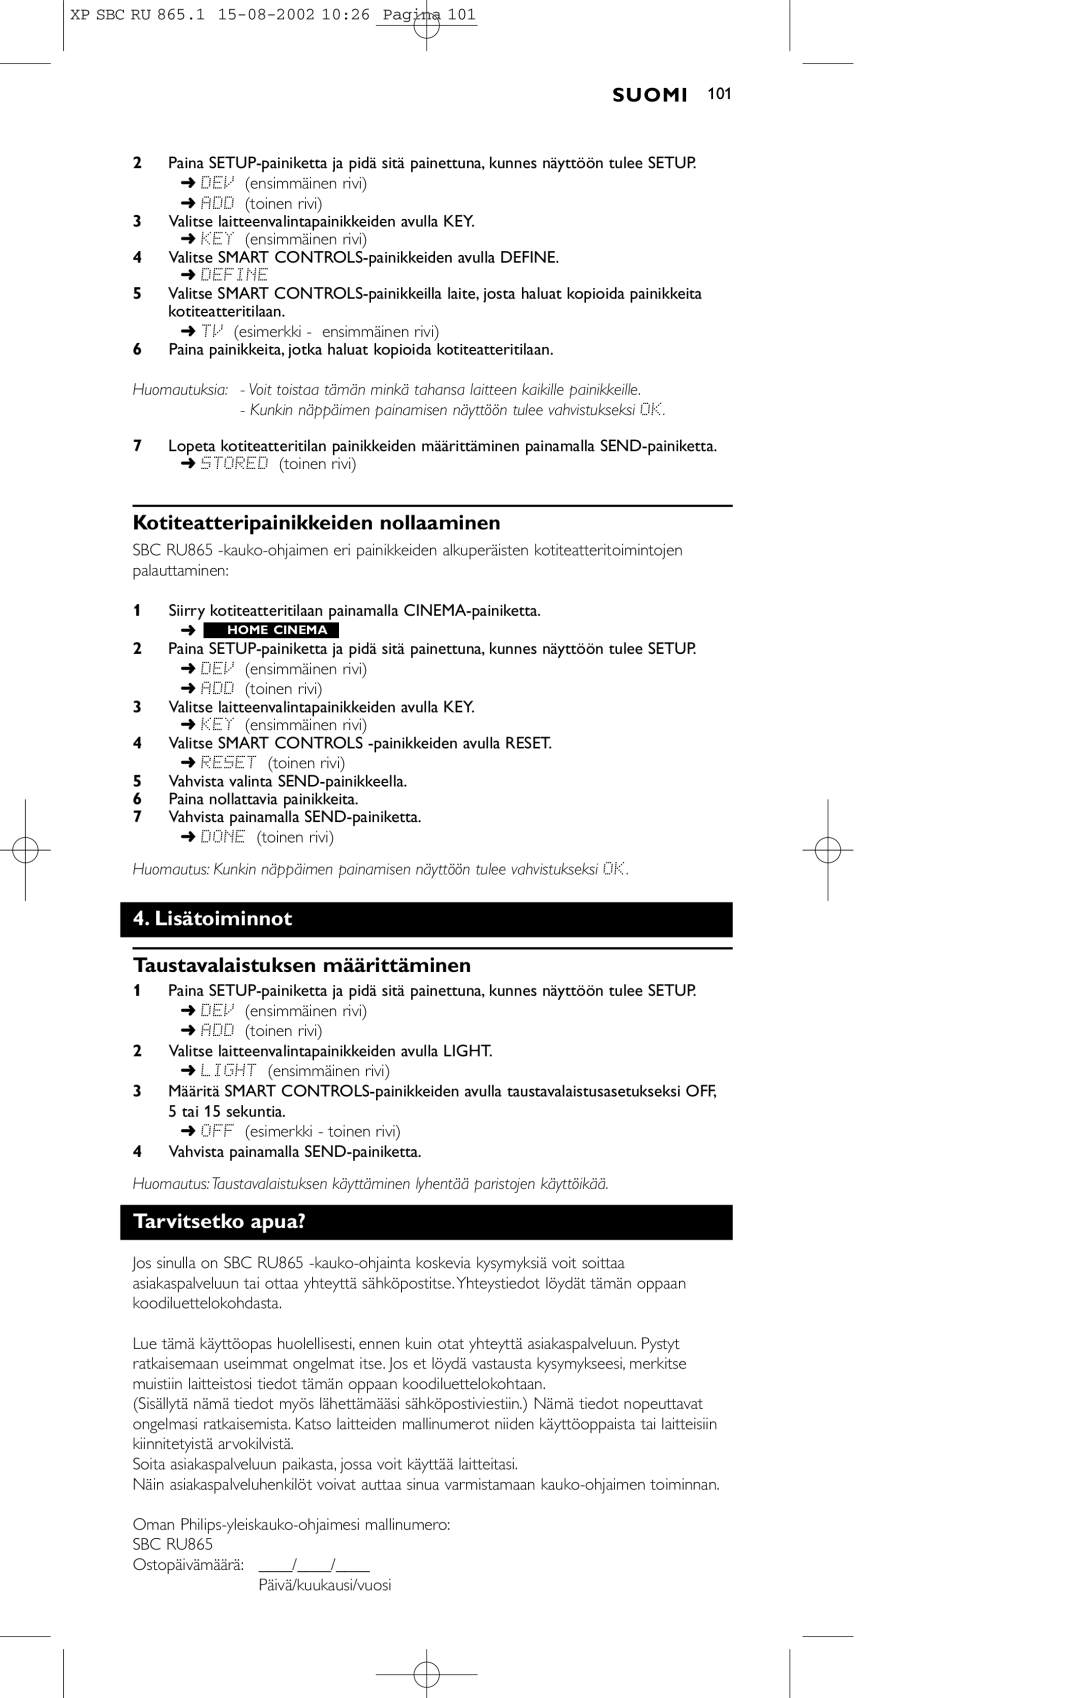 Philips SBC RU 865/00 manual Kotiteatteripainikkeiden nollaaminen, Lisätoiminnot, Taustavalaistuksen määrittäminen 